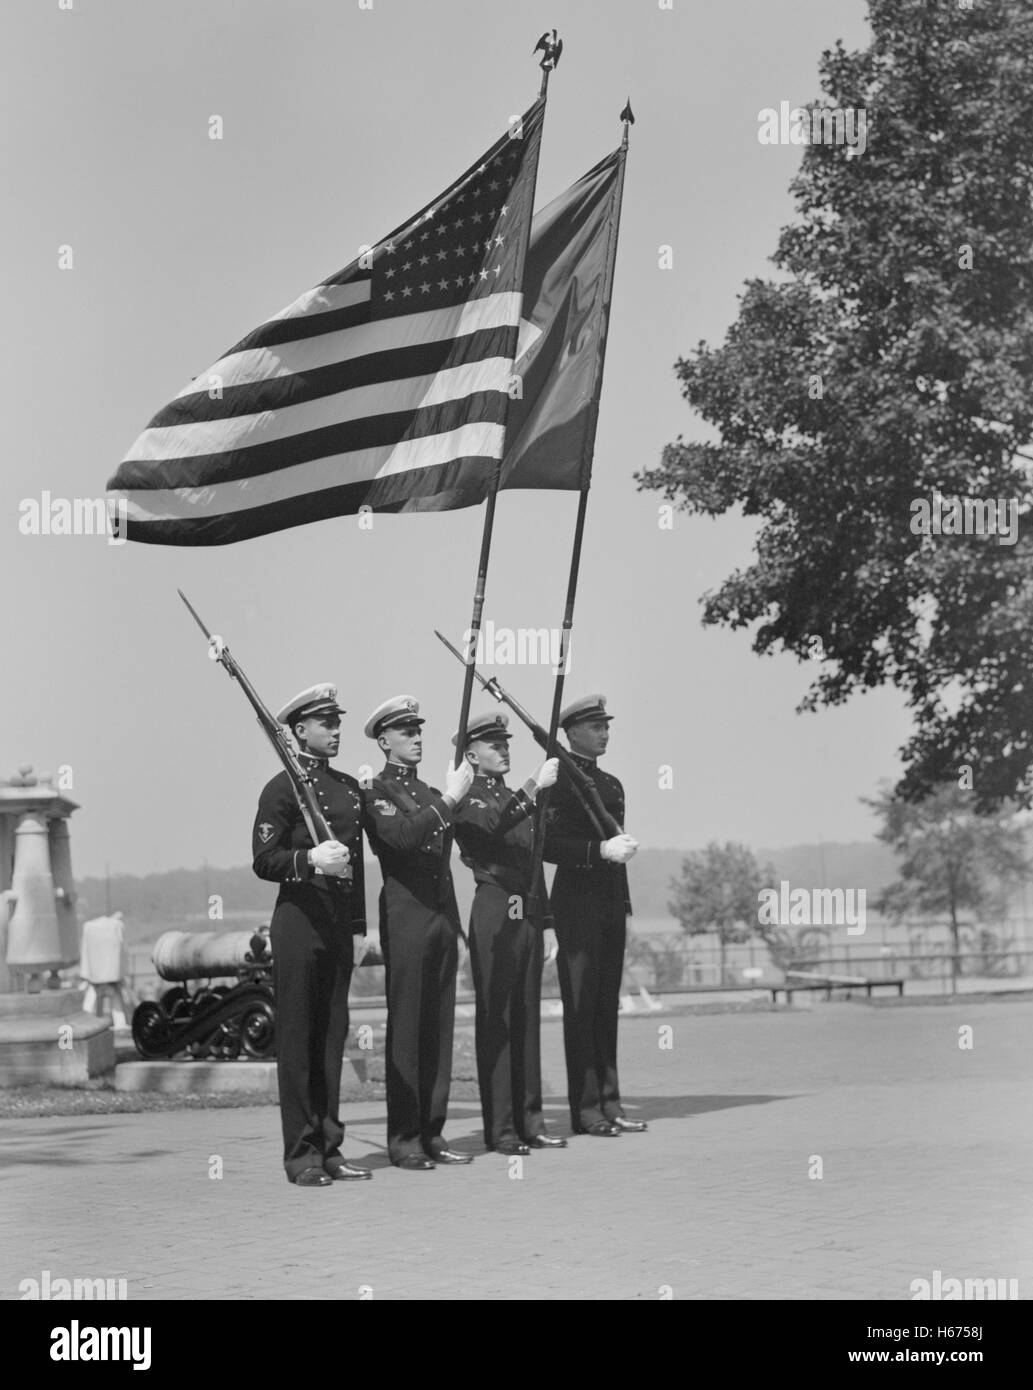 Cadetes de protección del color, de la Academia Naval de los Estados Unidos, en Annapolis, Maryland, EE.UU., por el teniente Whitman para la Oficina de Información de Guerra, Julio de 1942 Foto de stock